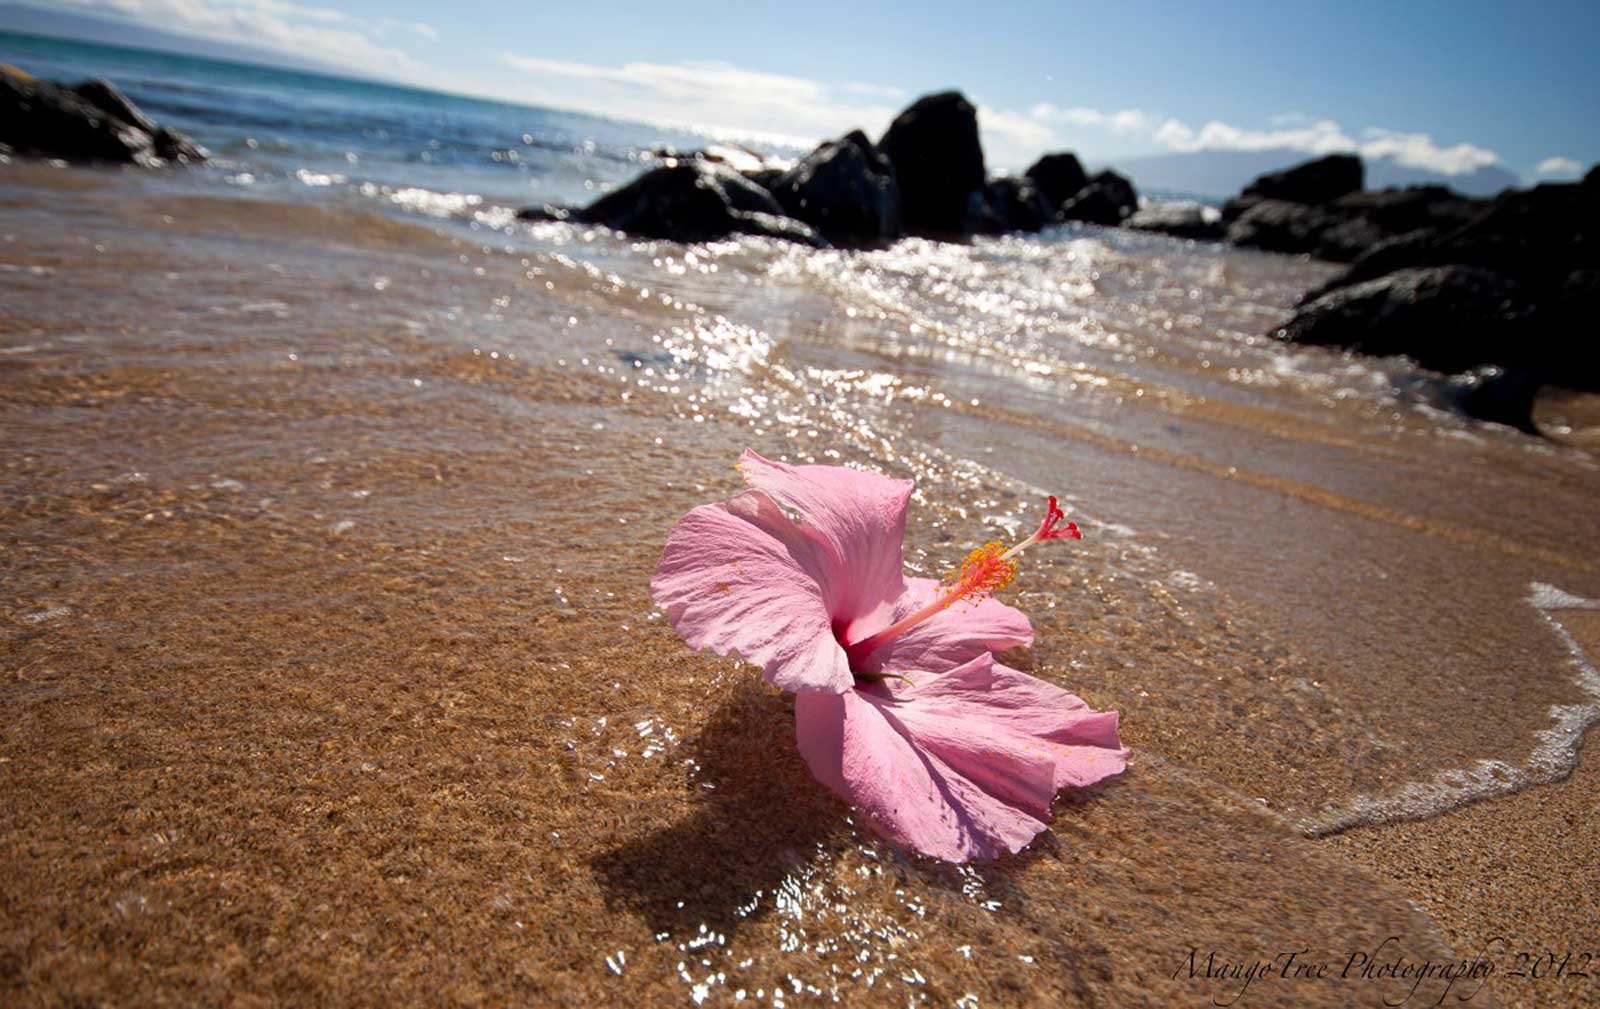 Цветок на фоне моря